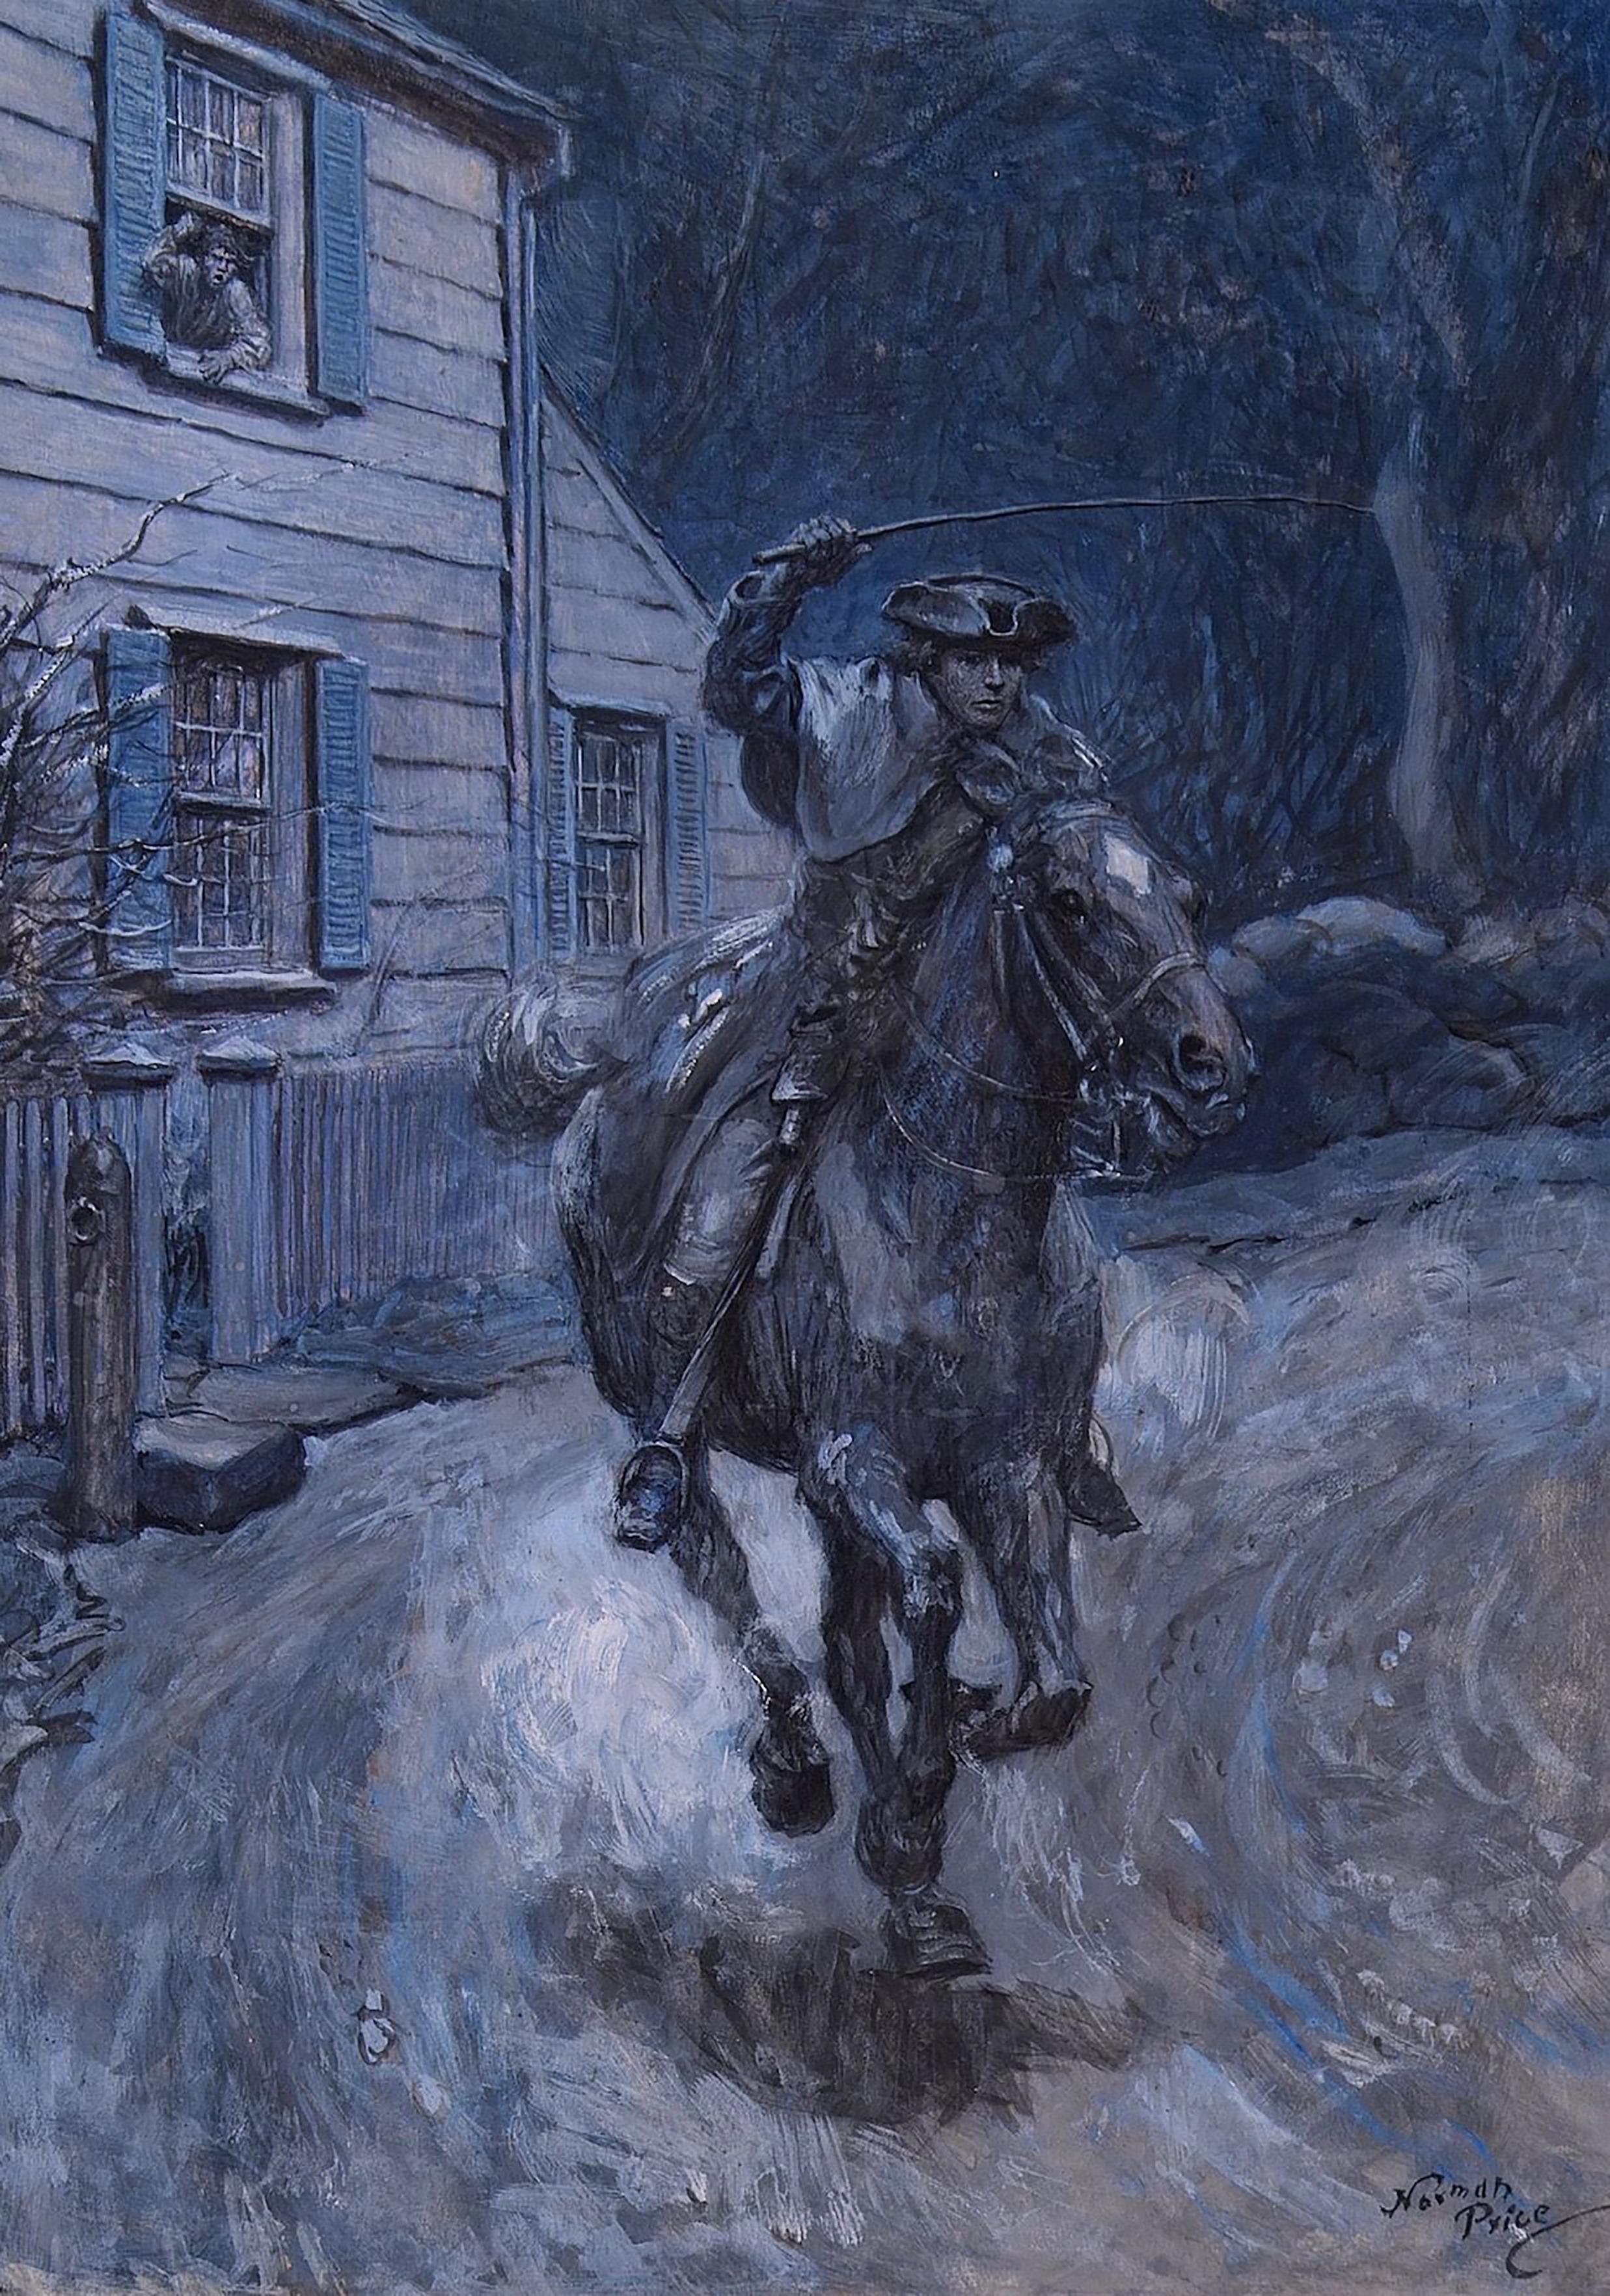 Paul Revere Riding on Horseback